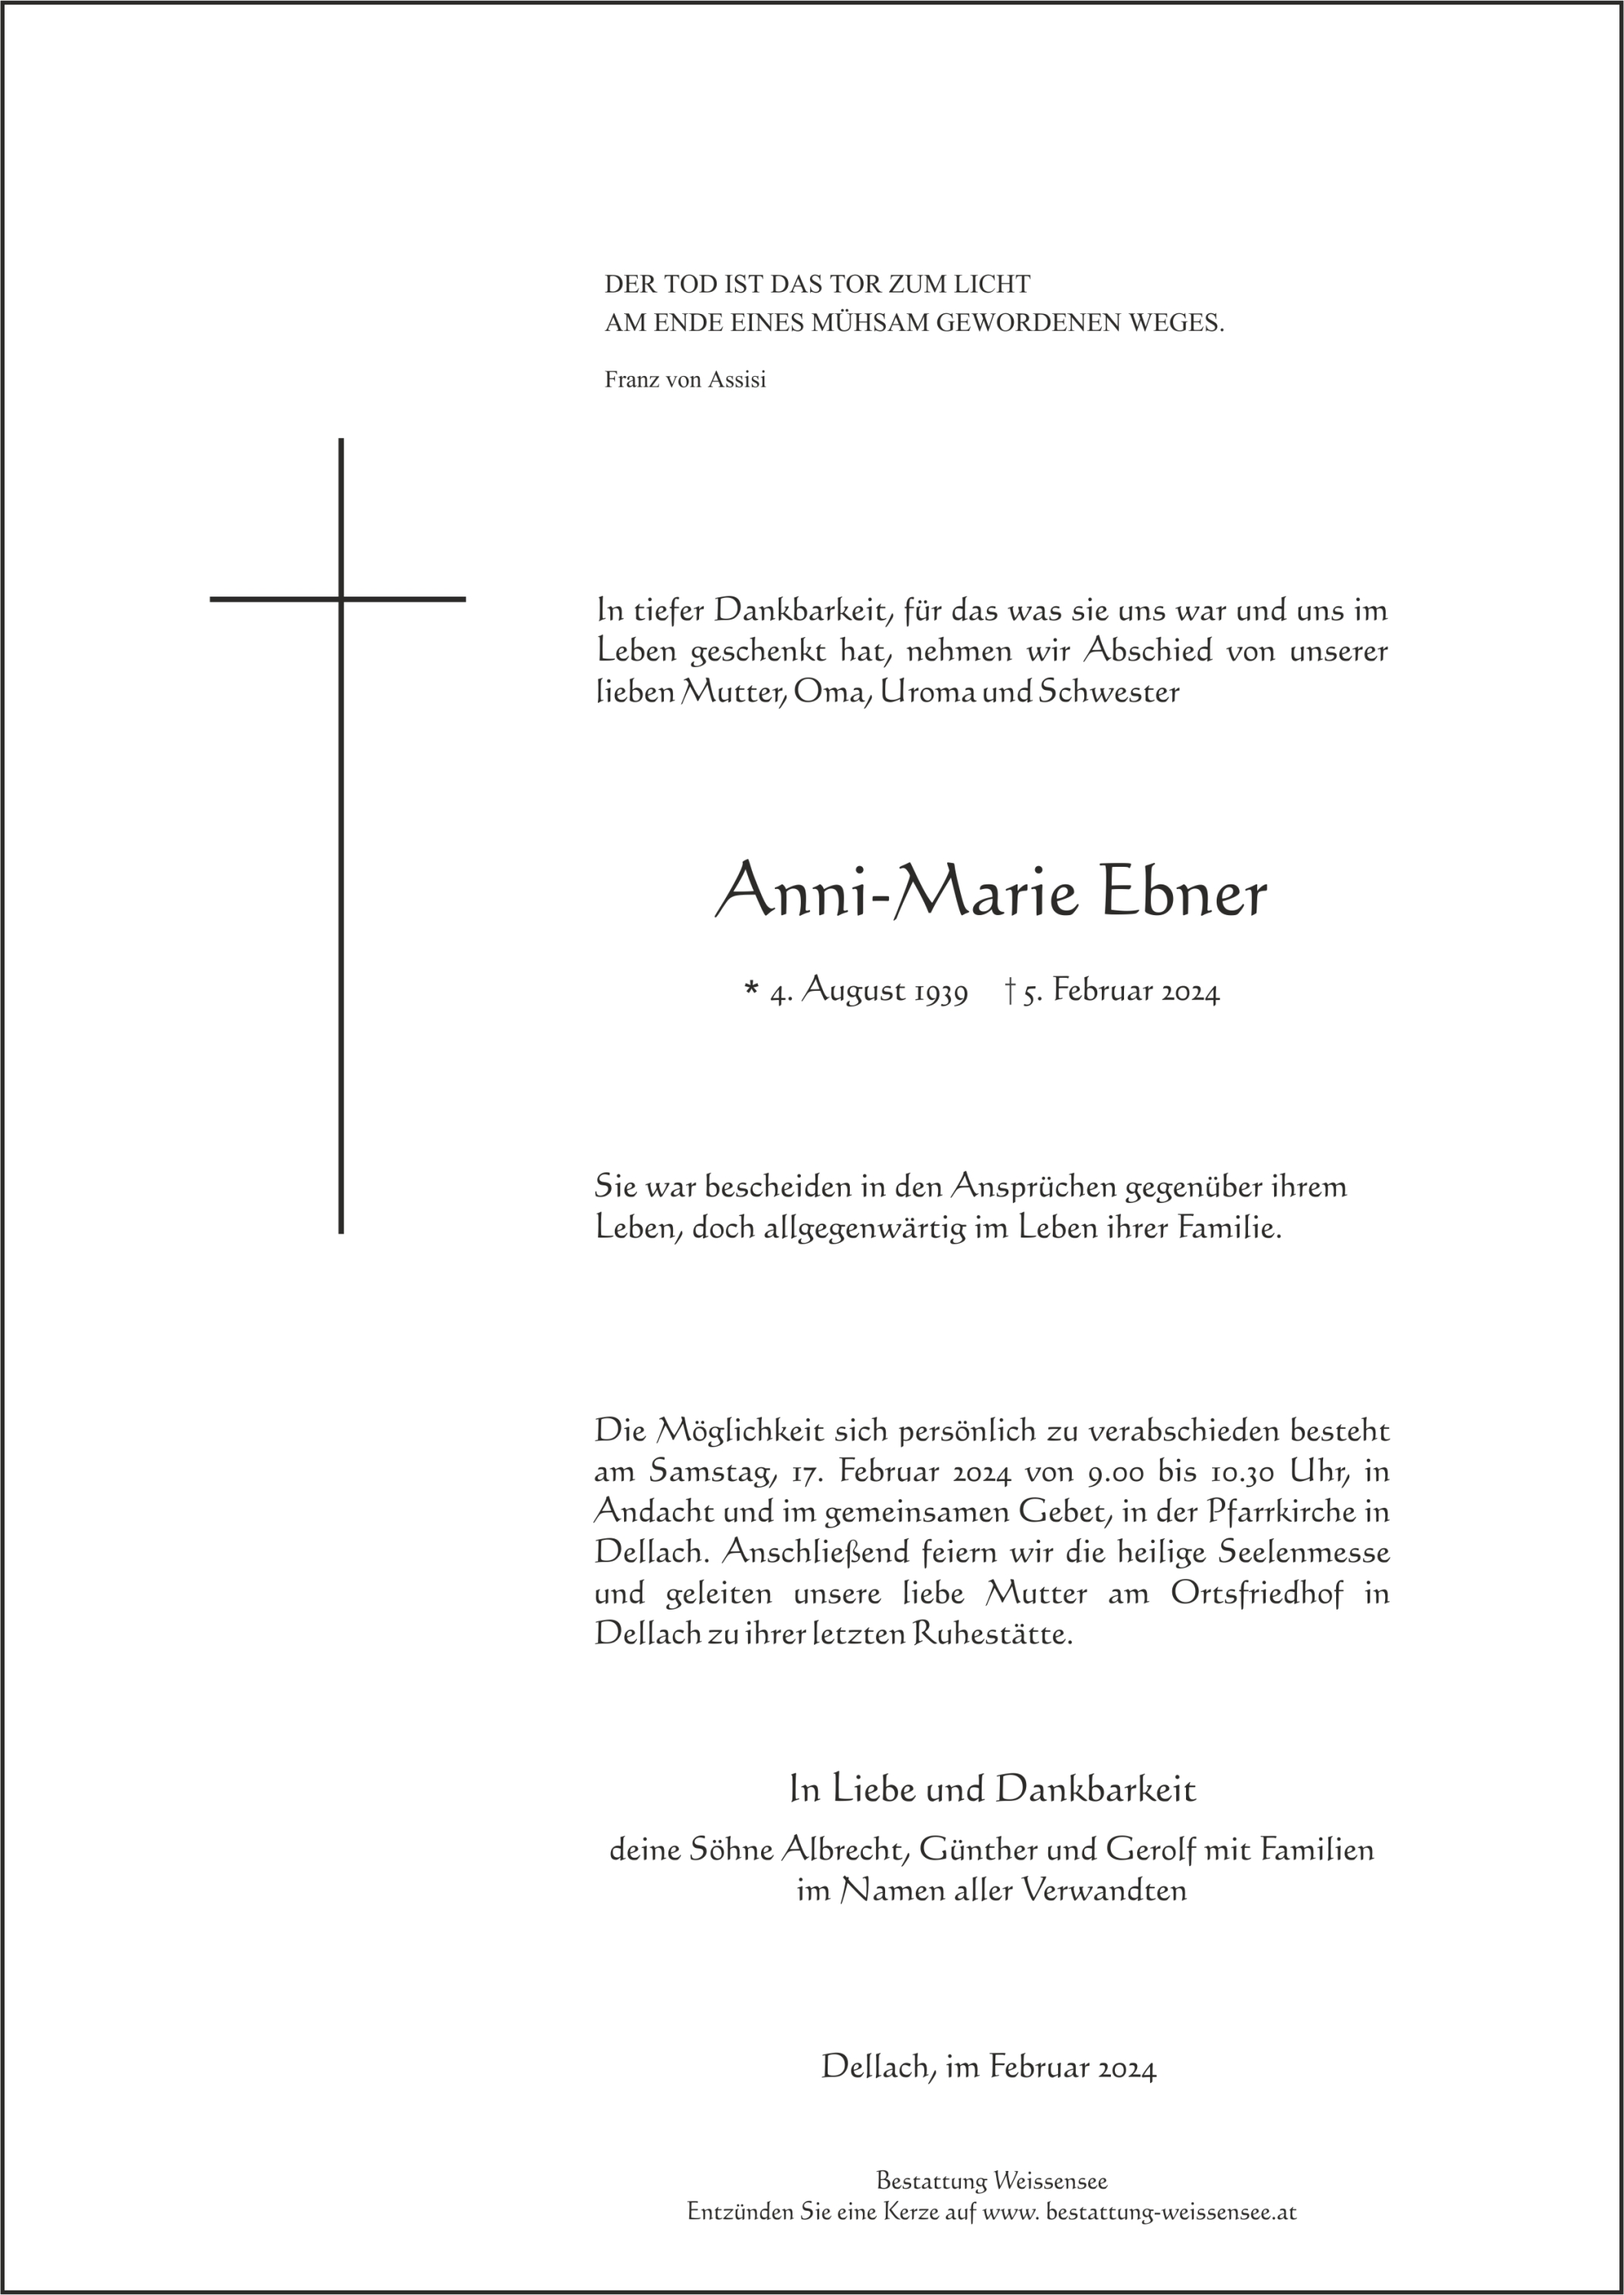 Anni-Marie Ebner